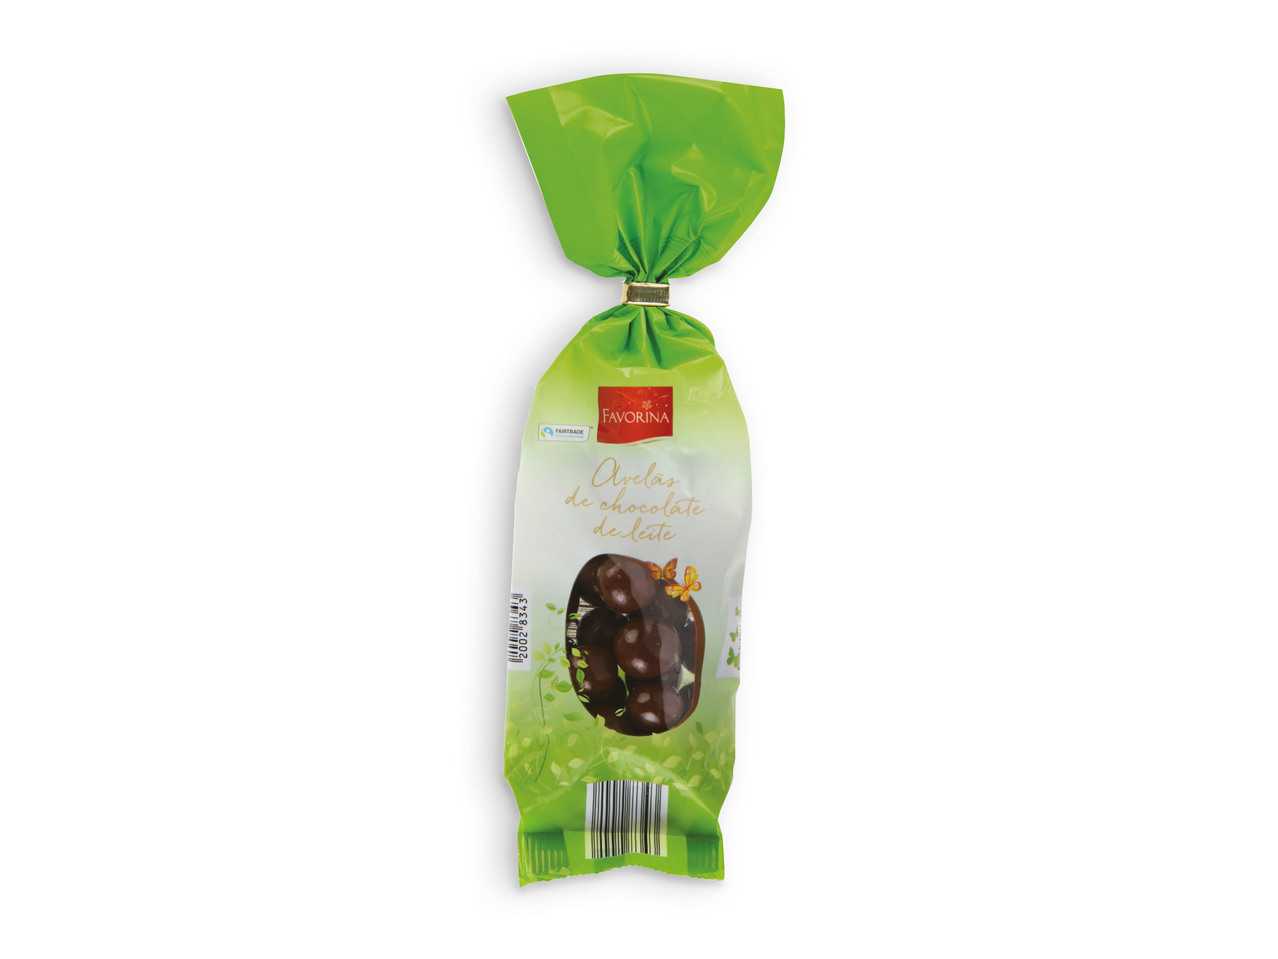 FAVORINA(R) Avelãs com Chocolate de Leite